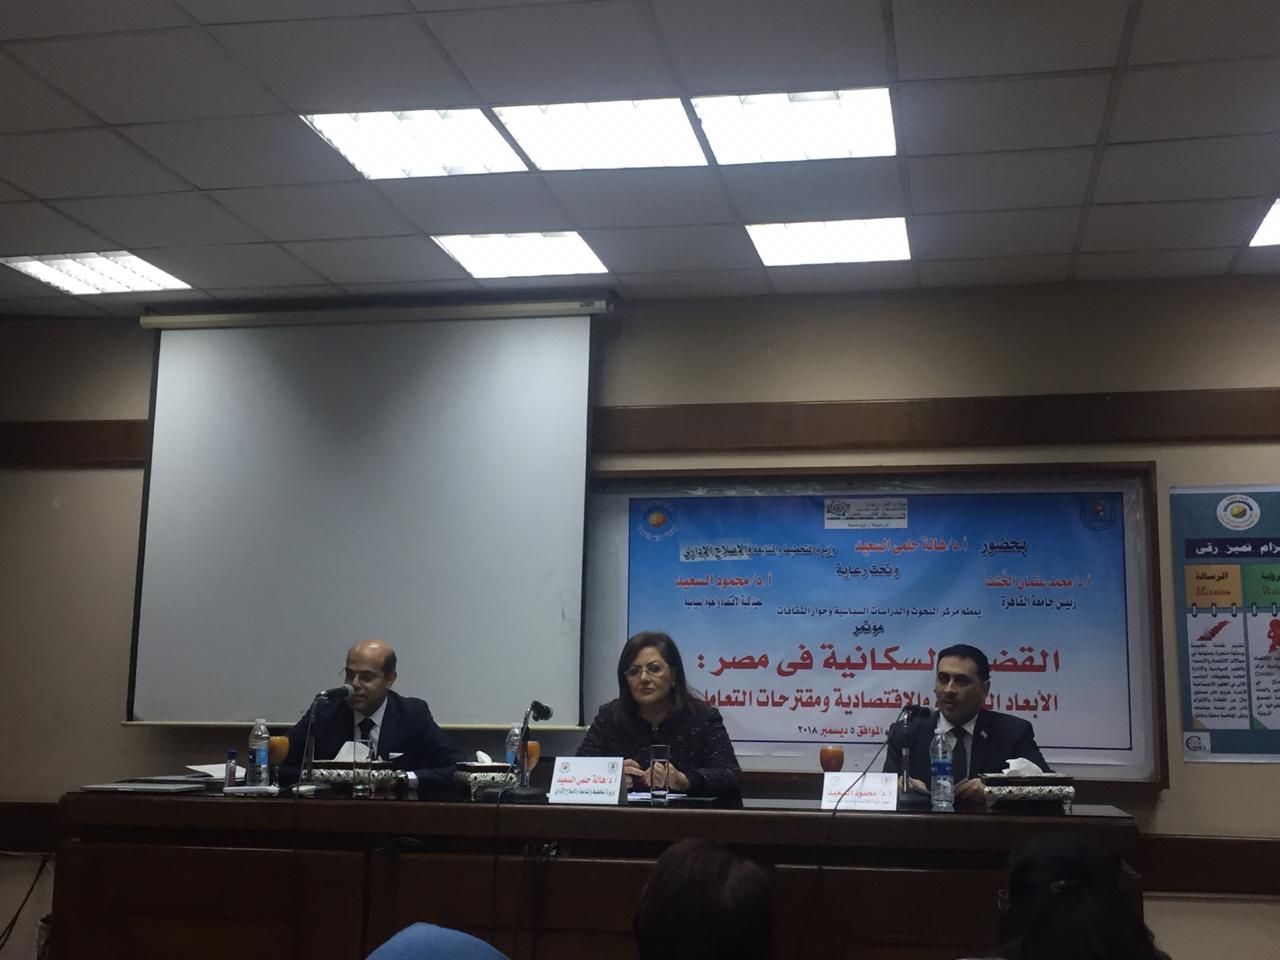 مؤتمر القضية السكانية فى مصر الأبعاد الثقافية والاقتصادية والاستراتيجية ومقترحات التعامل،  (4)